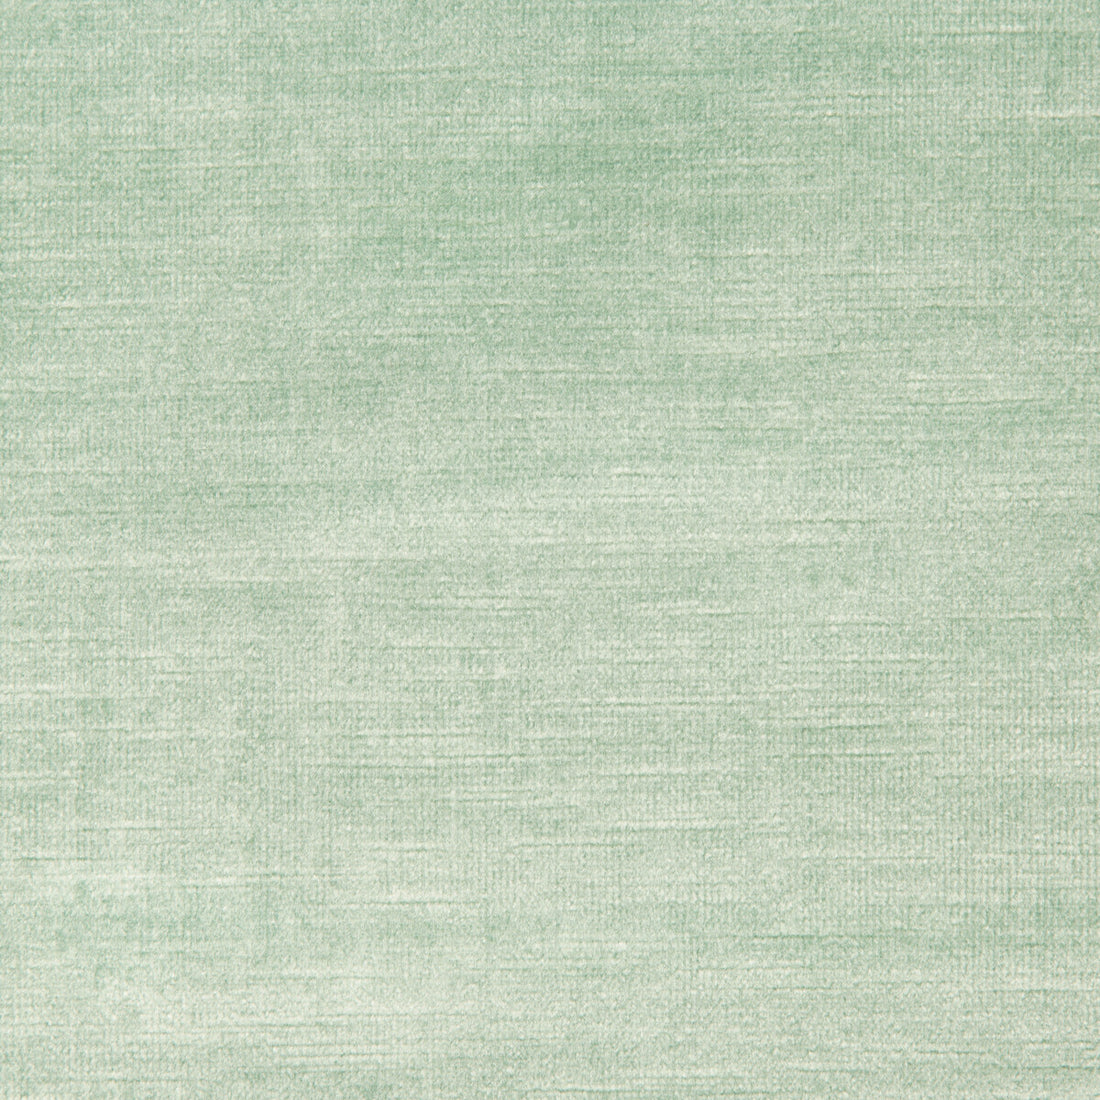 Venetian fabric in hazel color - pattern 31326.13.0 - by Kravet Design